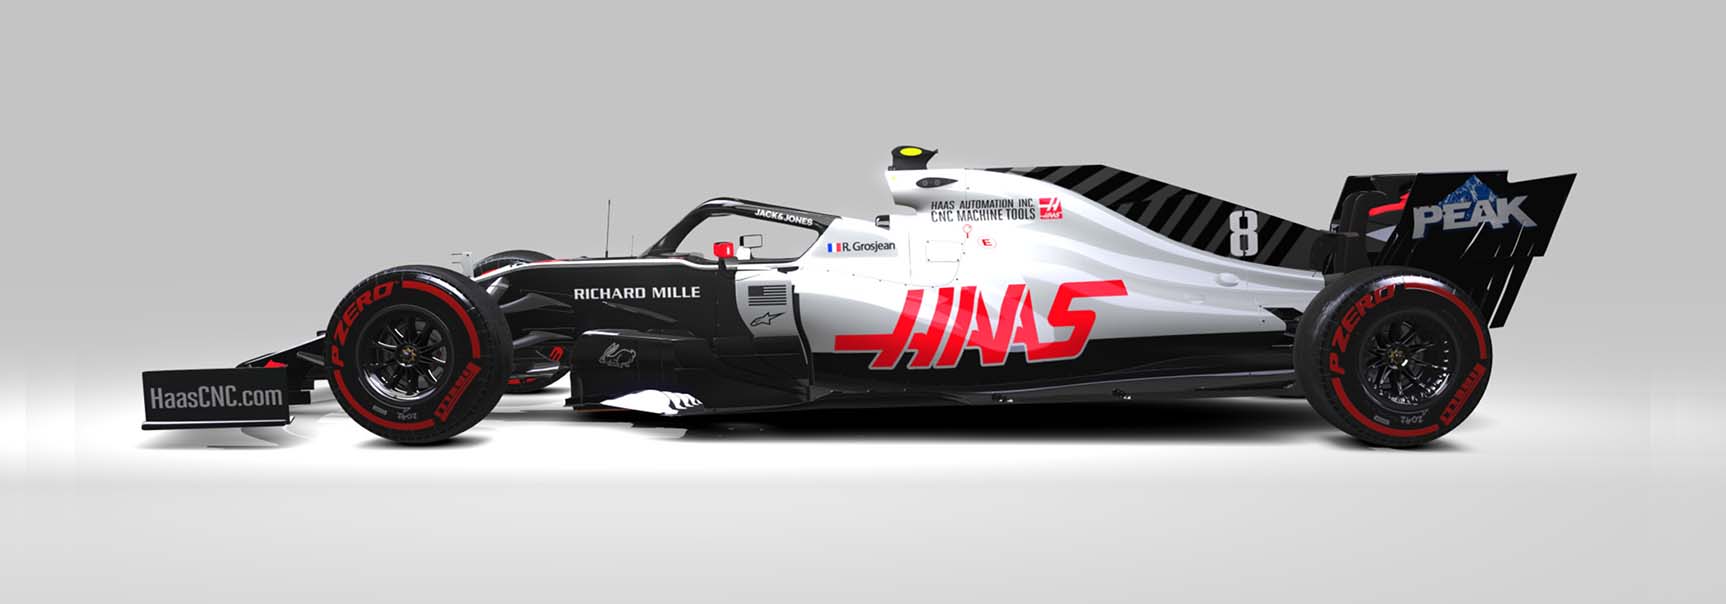 Haas F1 VF-20